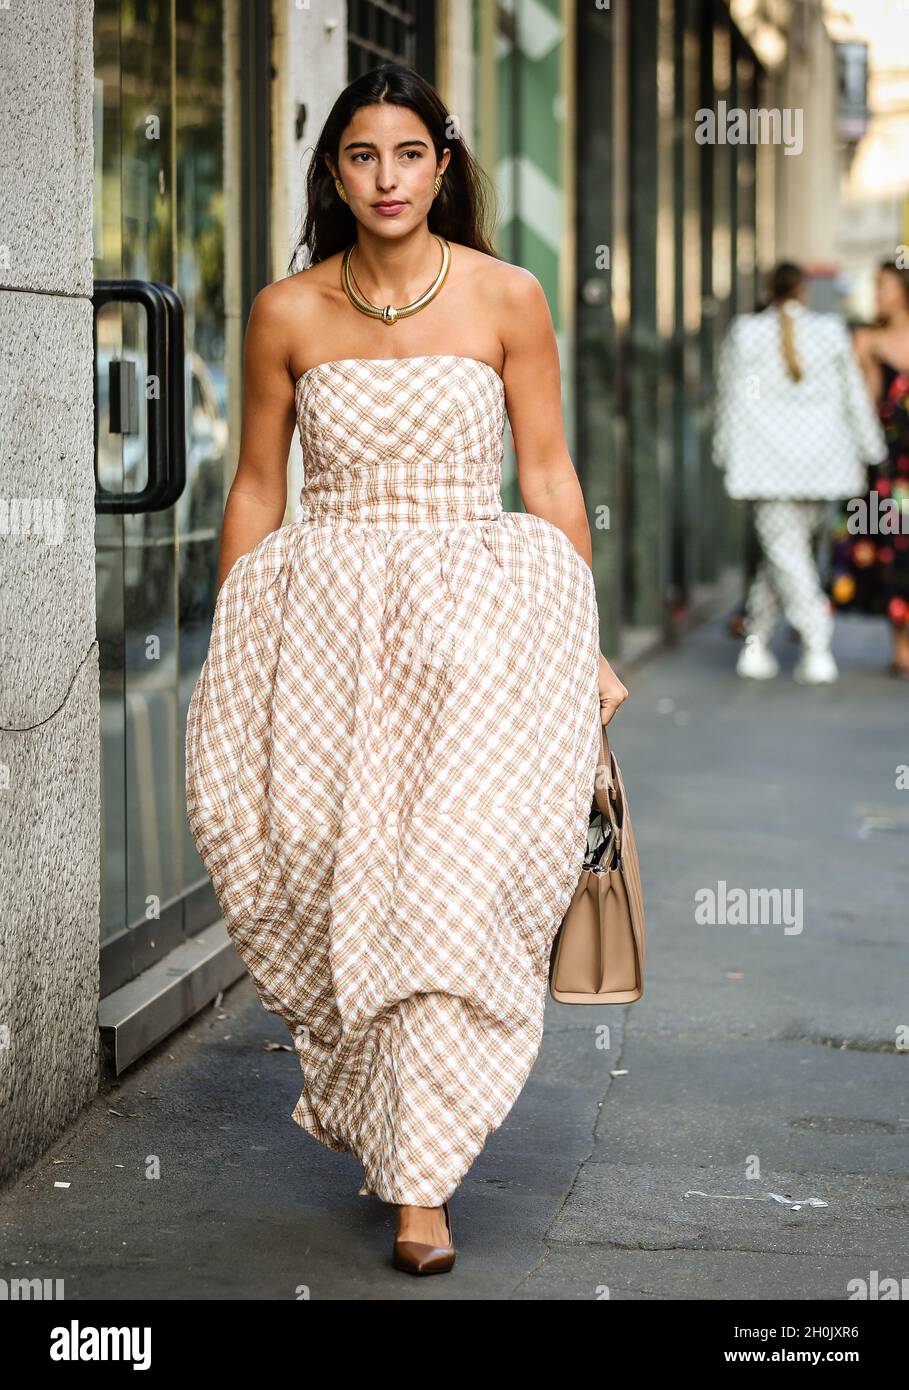 MAILAND, Italien- September 23 2021: Bettina Looney auf der Straße in Mailand. Stockfoto